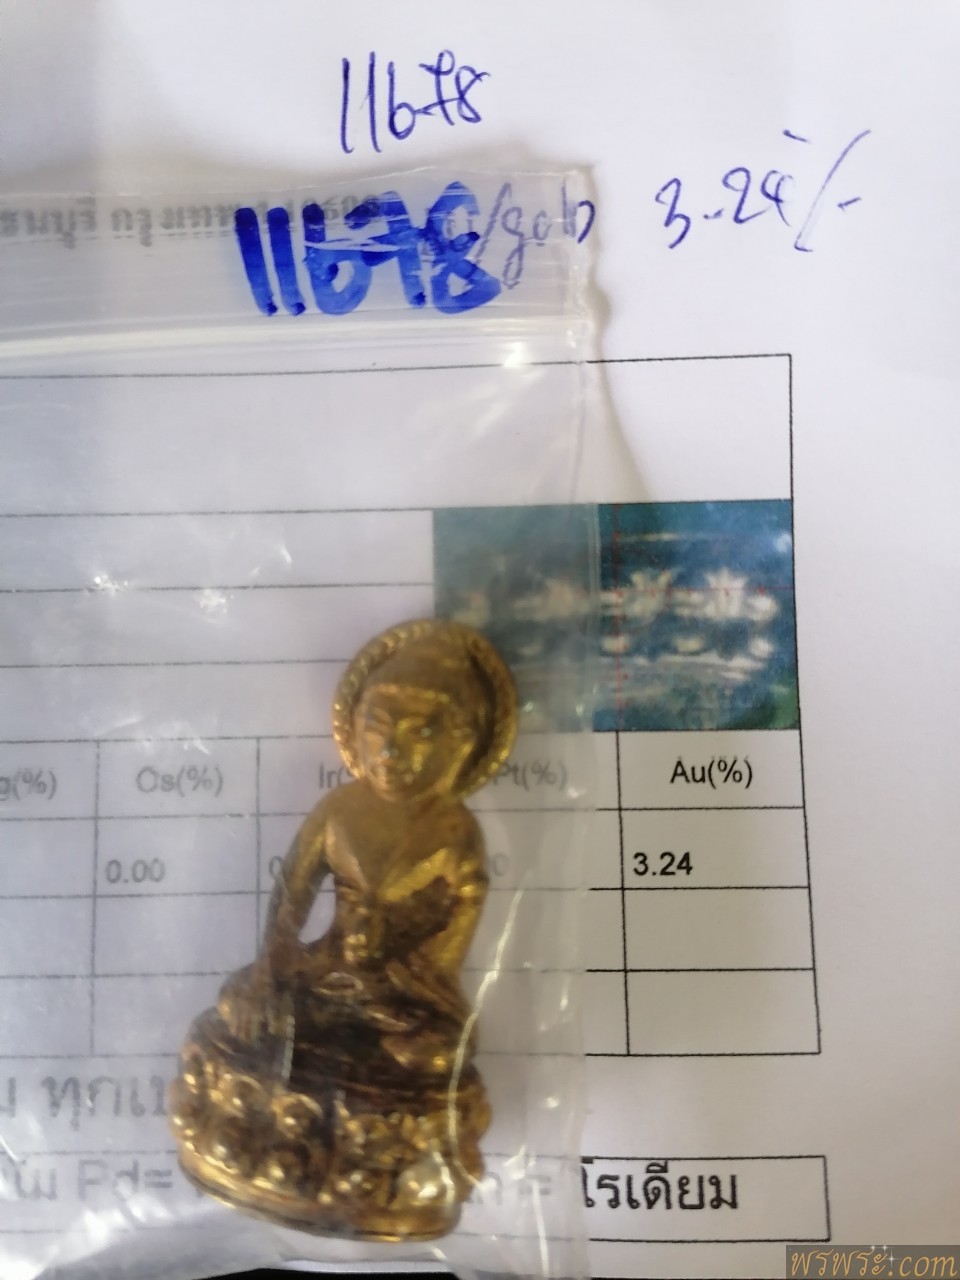 พระกริ่งรัชกาล พศ.๒๔๕๑ ประภามลฑล หลัง พระบรมฉายาลักษณ์ ใต้ฐาน ครุต หงส์ มังกร ศิลปแบบ นูน สูง เปียกทองคำแท้ มีใบครวจโลหะ มีค่าAU/GOLD   Phra Kring Phra Kring Rama 2408 B.E. Prabhamonthon, back of the royal image, under the base of the royal image, embossed, wet gold